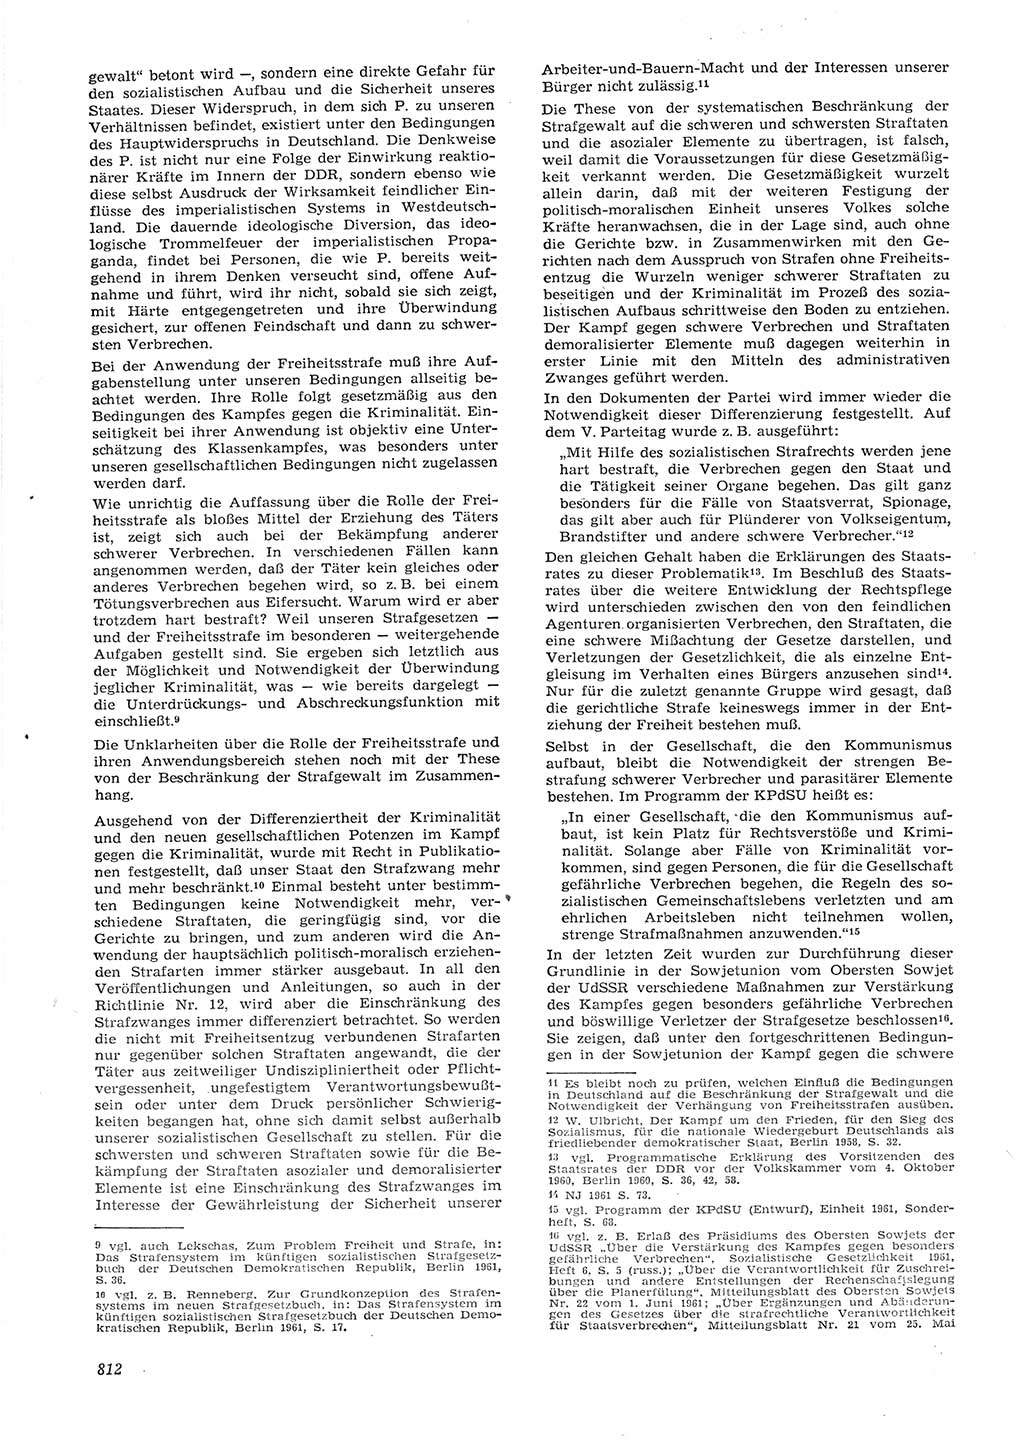 Neue Justiz (NJ), Zeitschrift für Recht und Rechtswissenschaft [Deutsche Demokratische Republik (DDR)], 15. Jahrgang 1961, Seite 812 (NJ DDR 1961, S. 812)